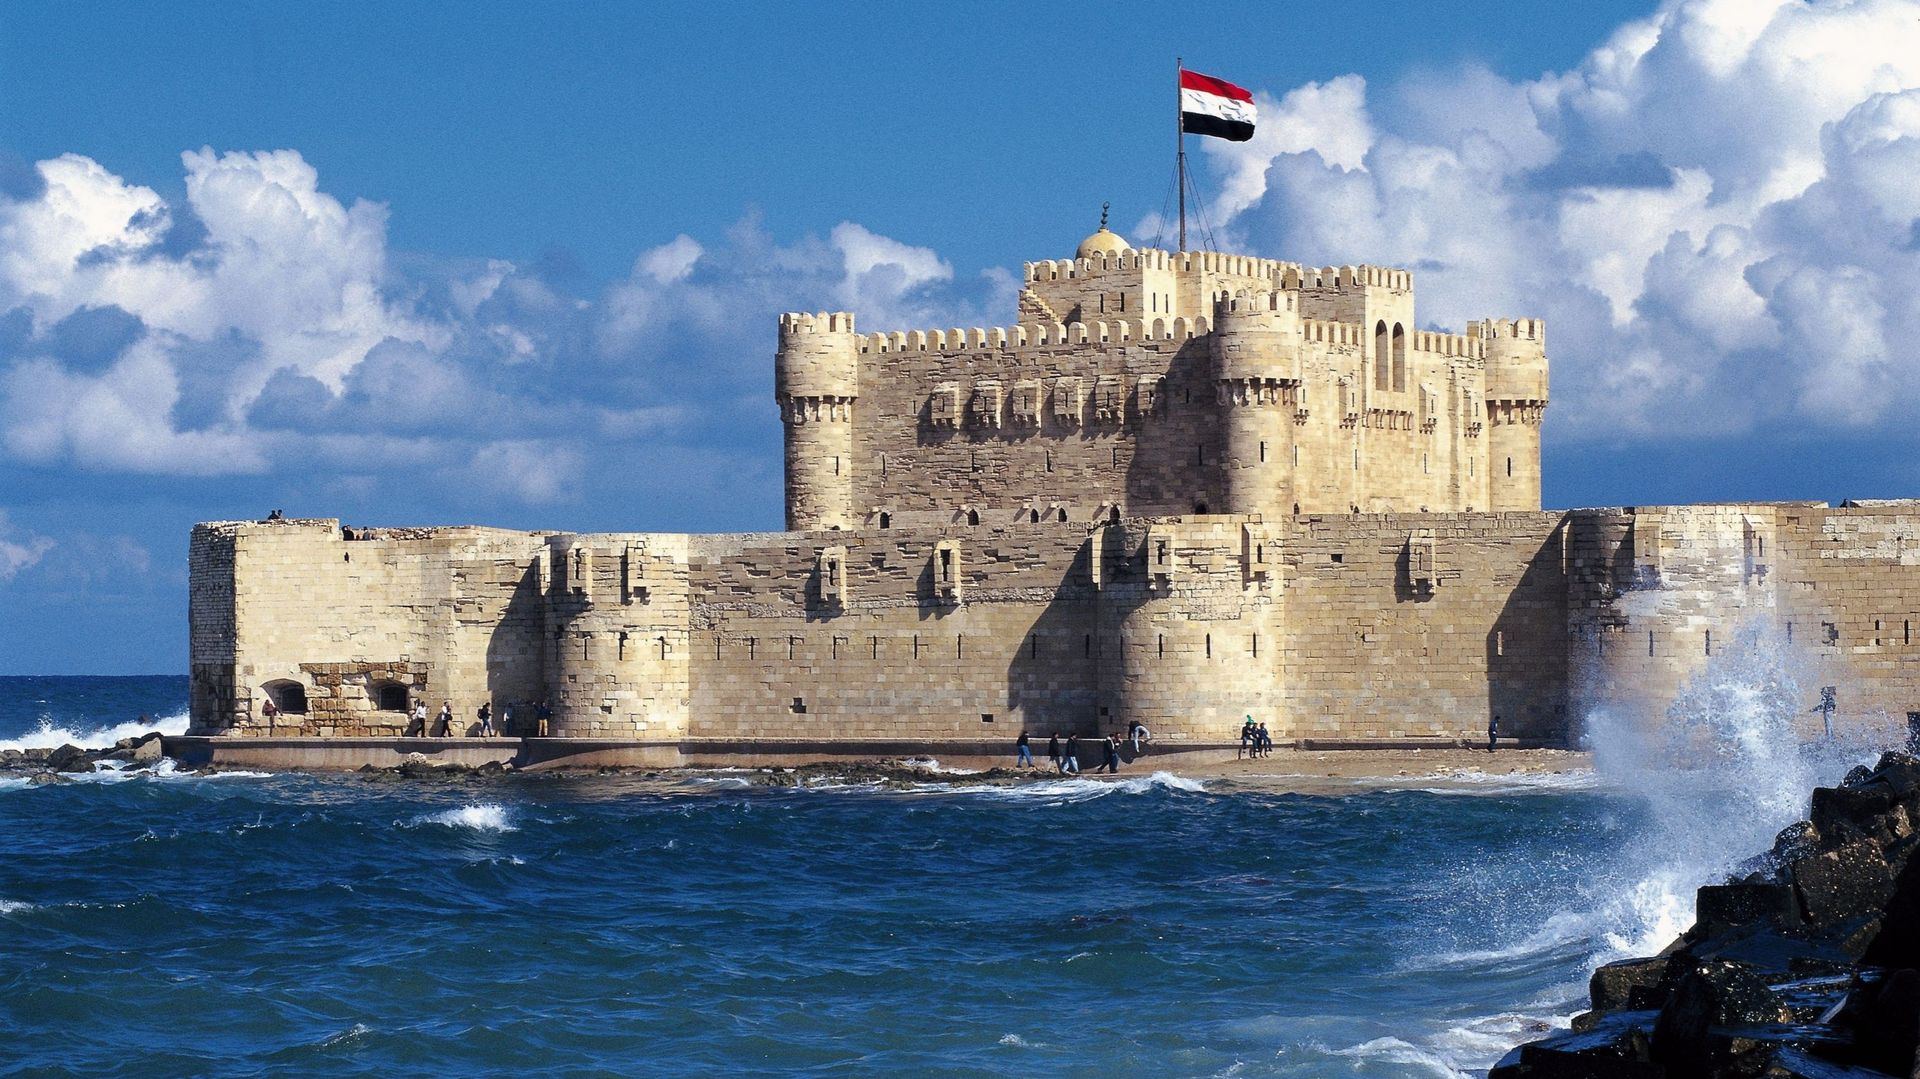 À Alexandrie, la citadelle Qaitbay est menacée par la montée du niveau de la mer, malgré les protections mises en place.